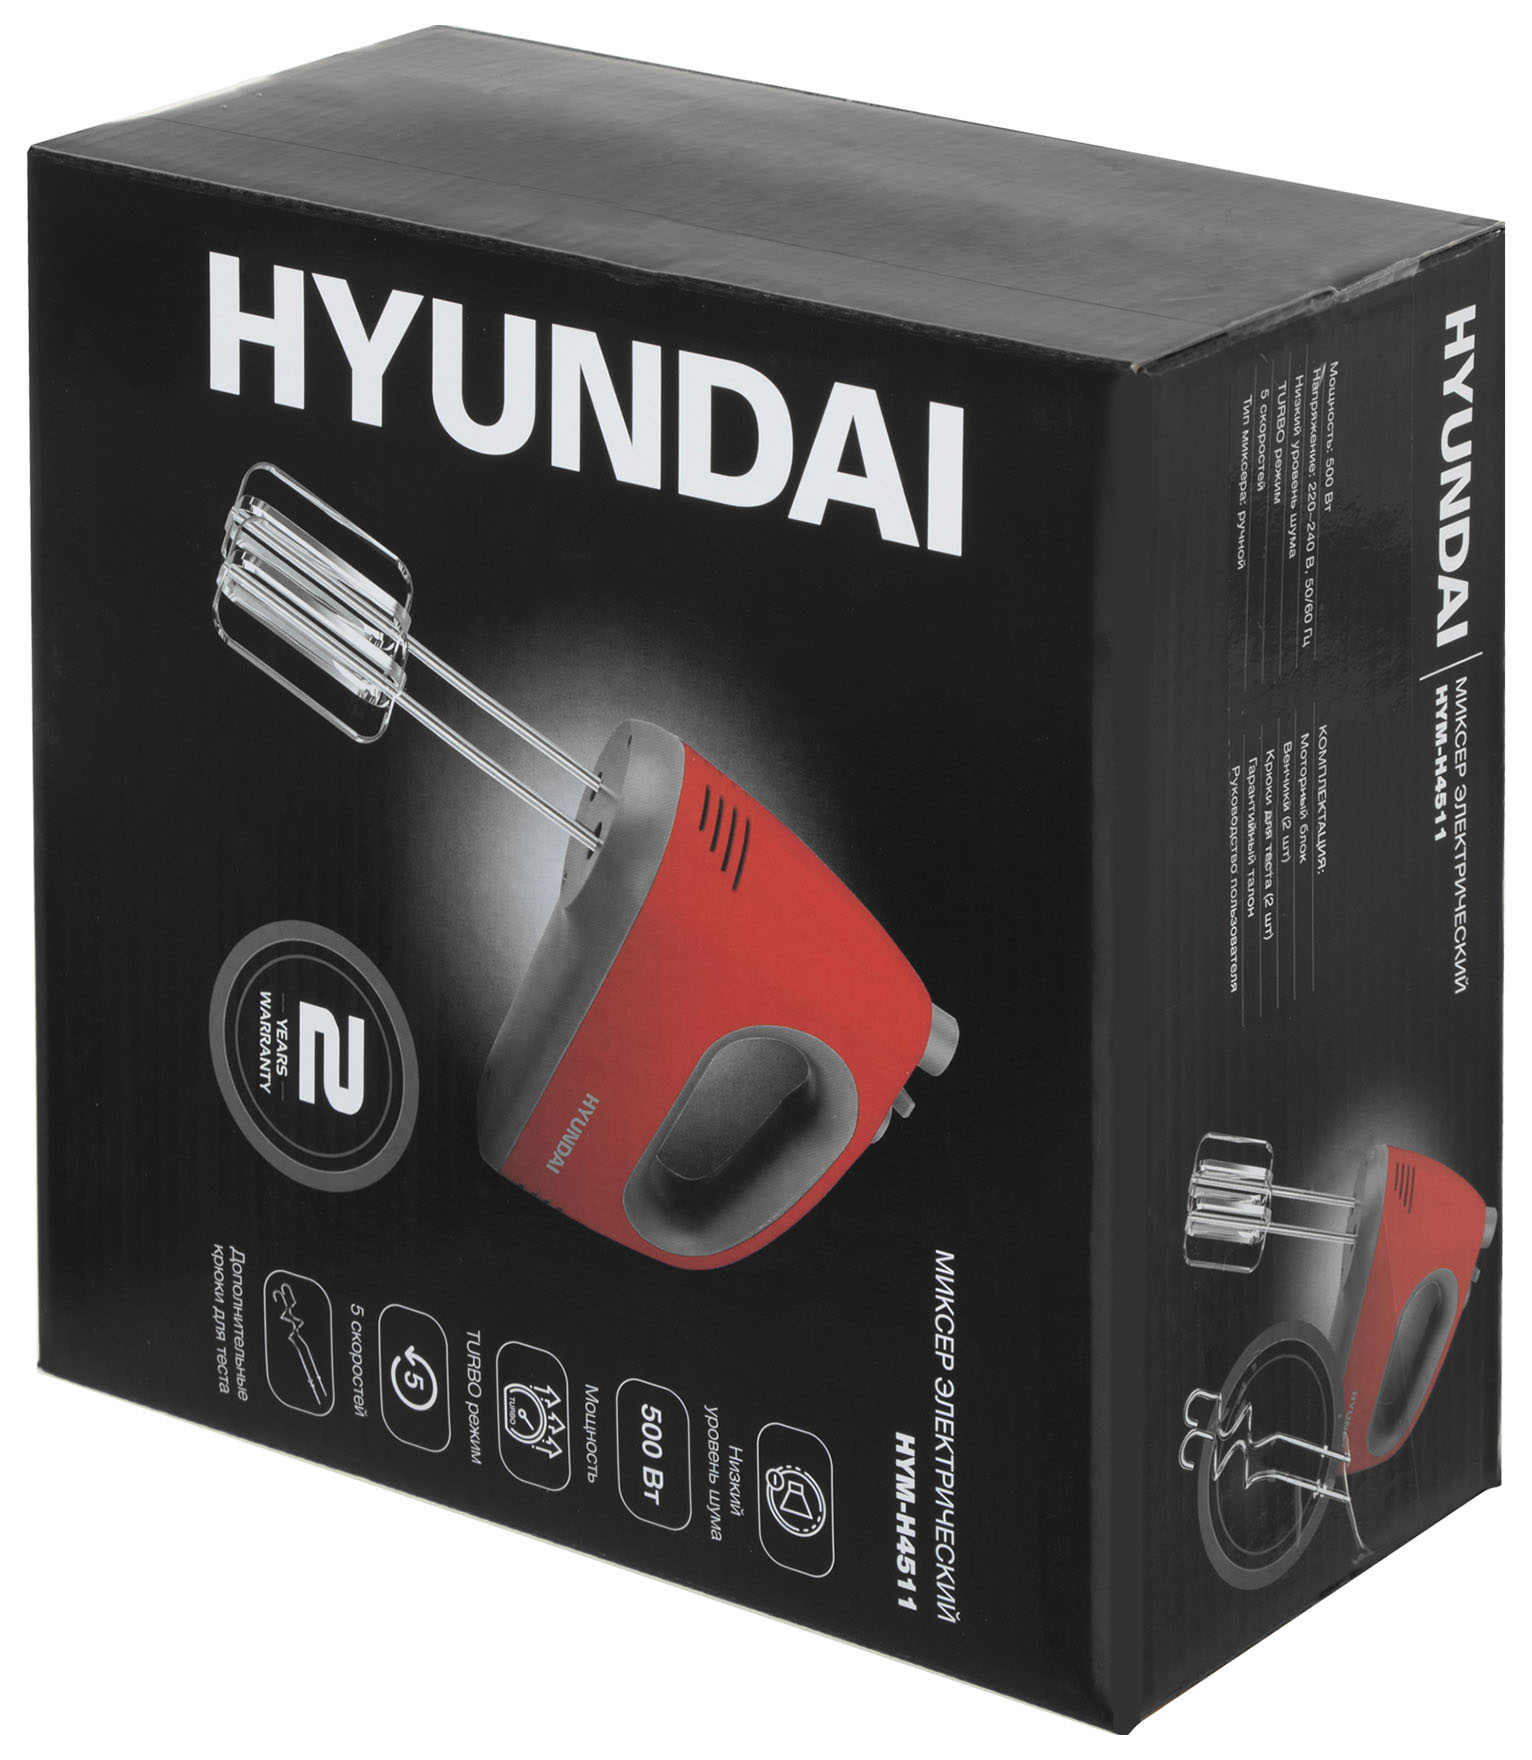 Миксер ручной Hyundai HYM-H4511 500Вт красный/серый